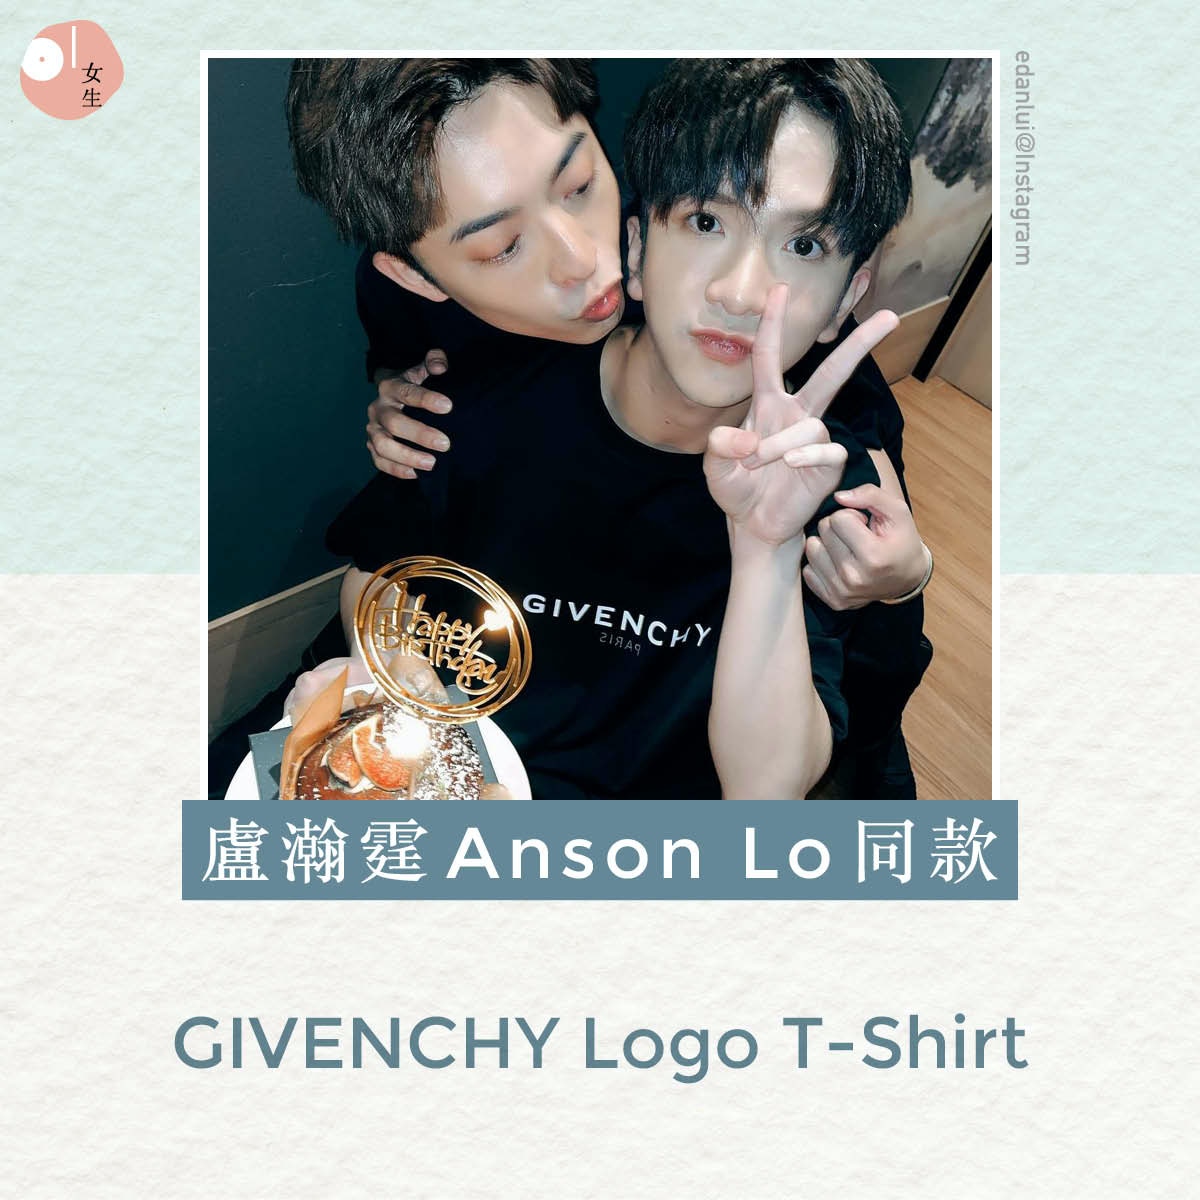 【名牌Logo Tee／MIRROR／Anson Lo／明星同款】盧瀚霆Anson Lo同款GIVENCHY Logo T-Shirt。